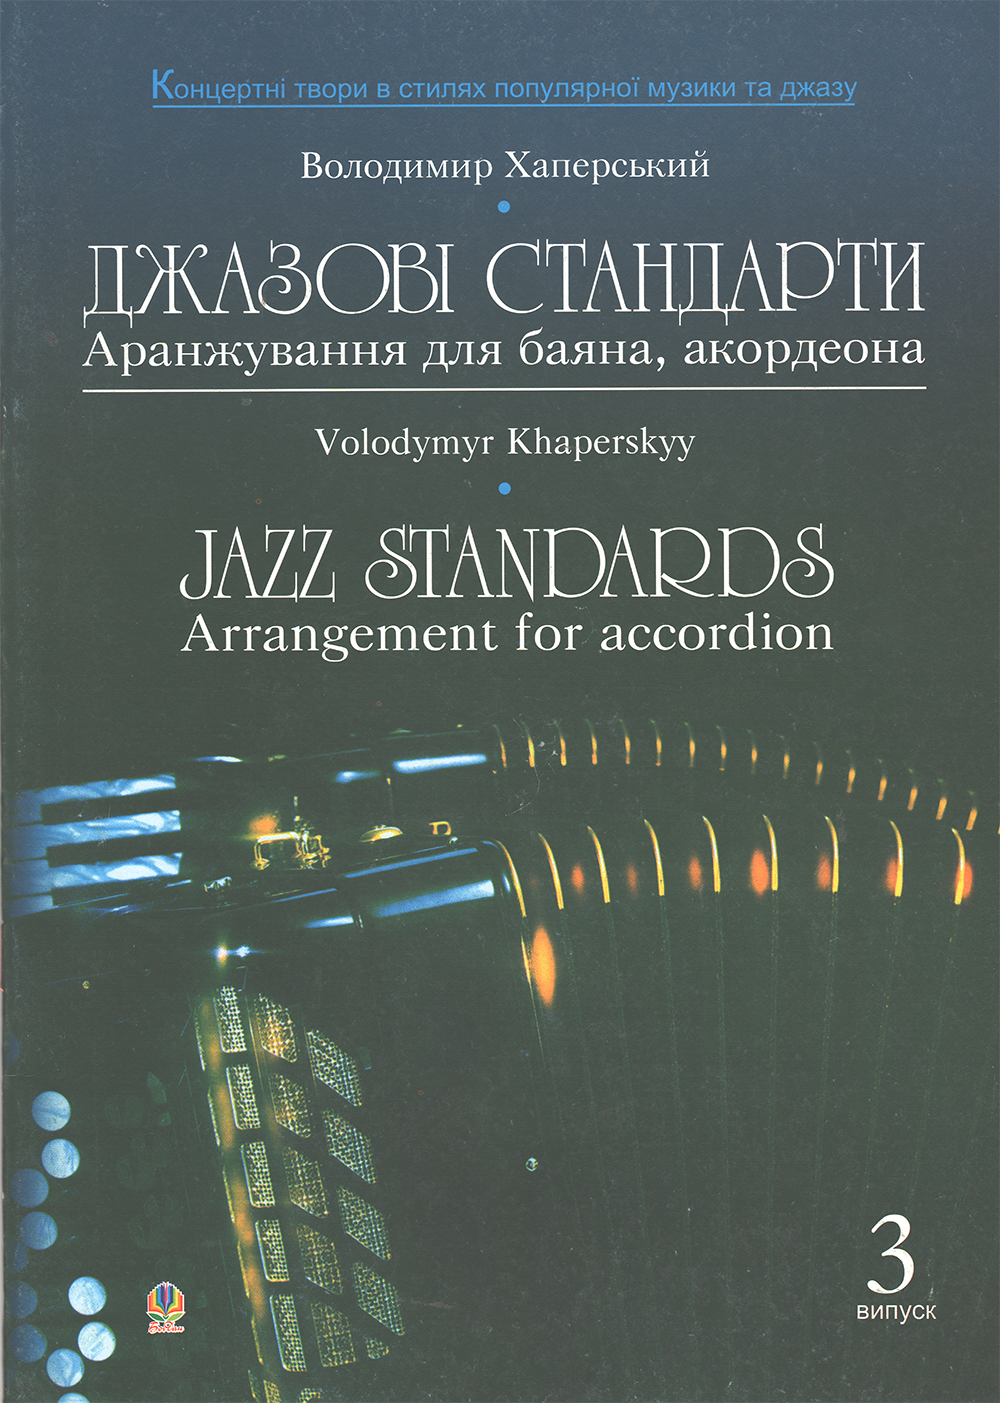 Джазові стандарти (аранжування для баяна, акордеона)